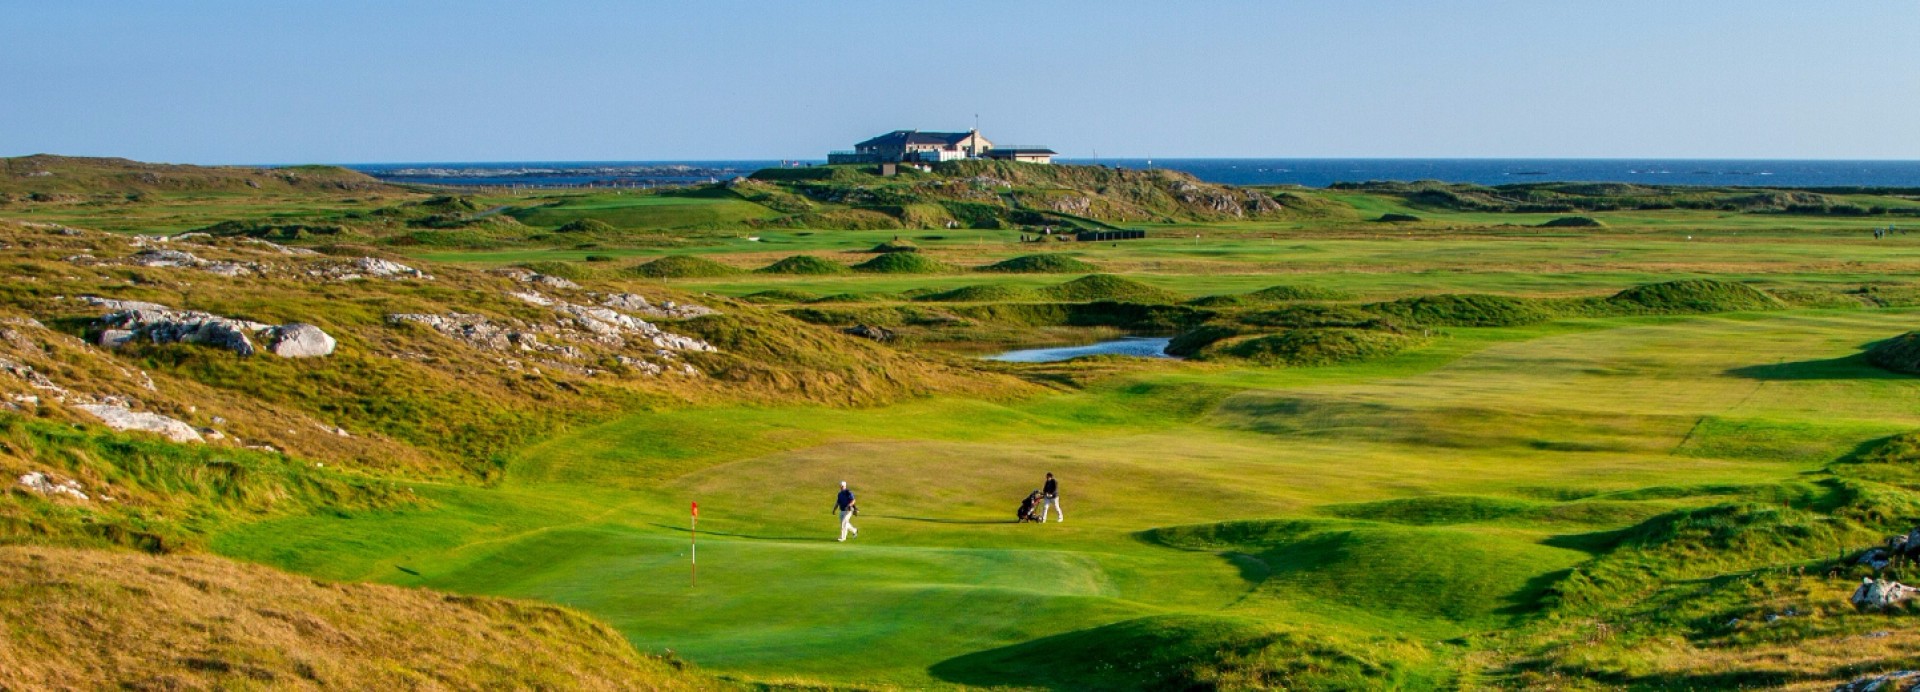 Connemara Golf Links  | Golfové zájezdy, golfová dovolená, luxusní golf